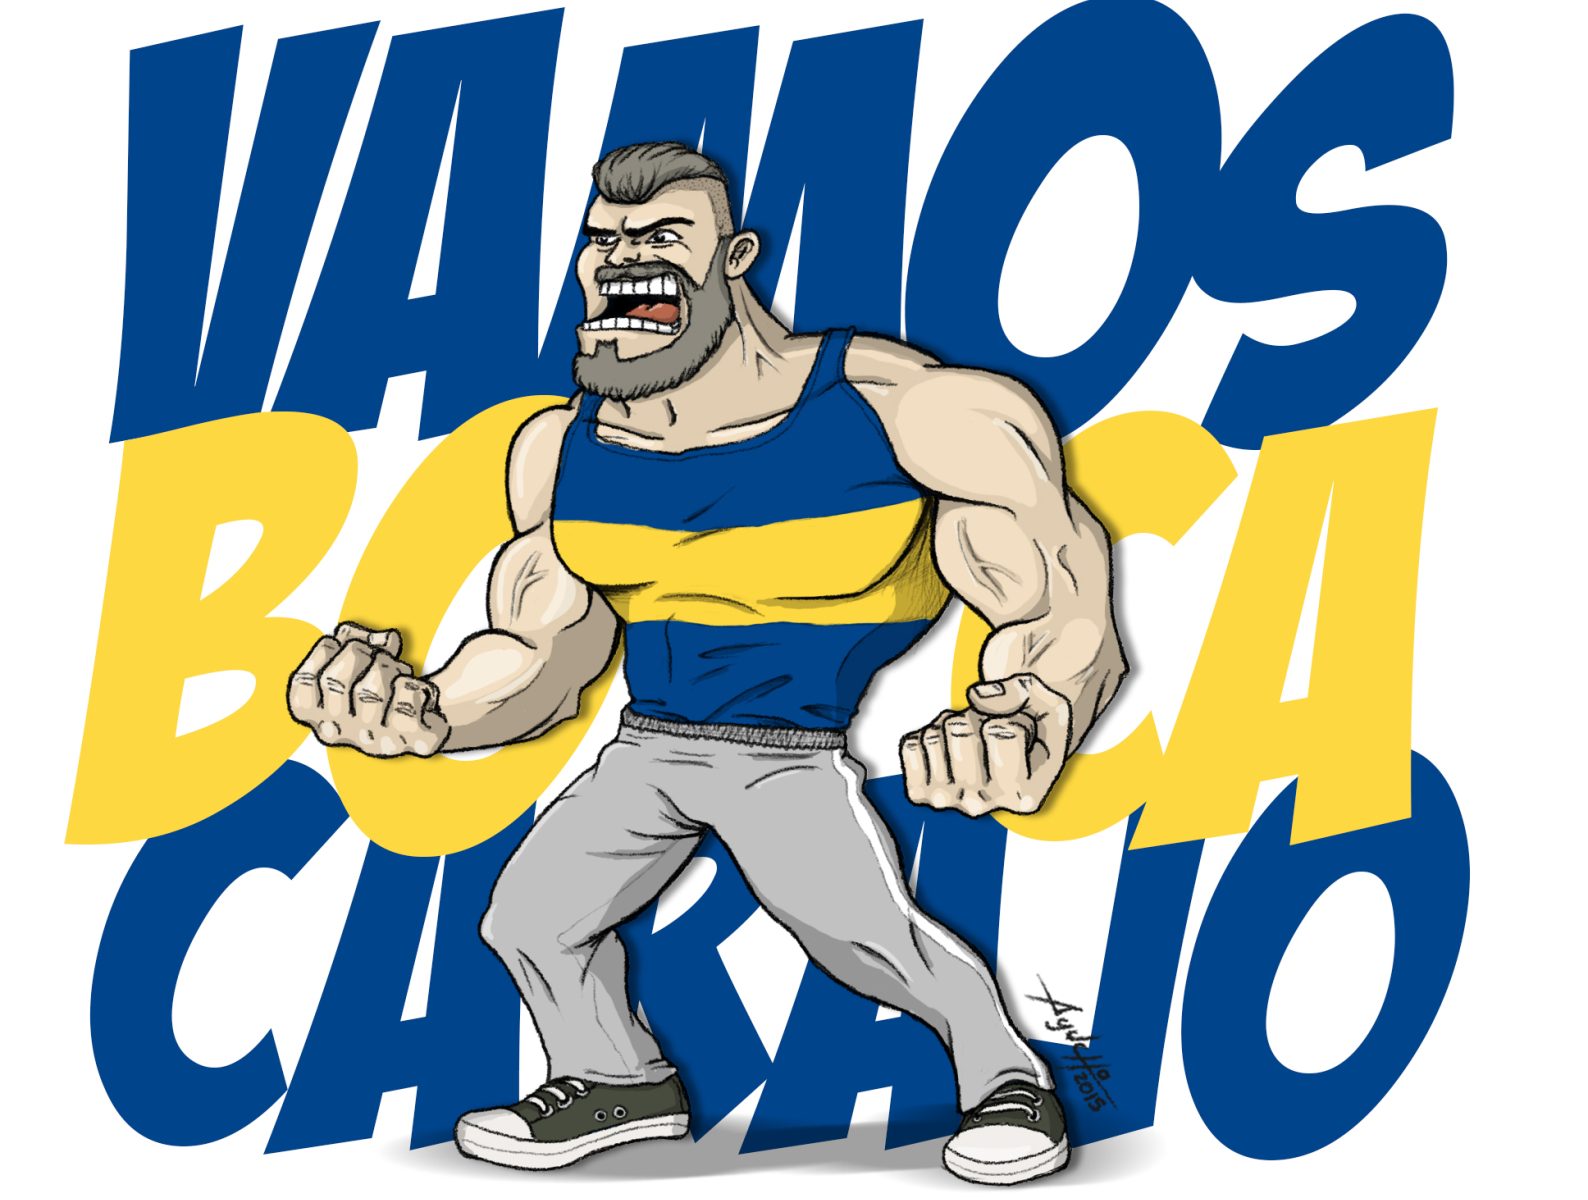 Vamos Boca bocajuniors cartoon dibujo drawing fanart futbol illustration photoshop sports tshirt art